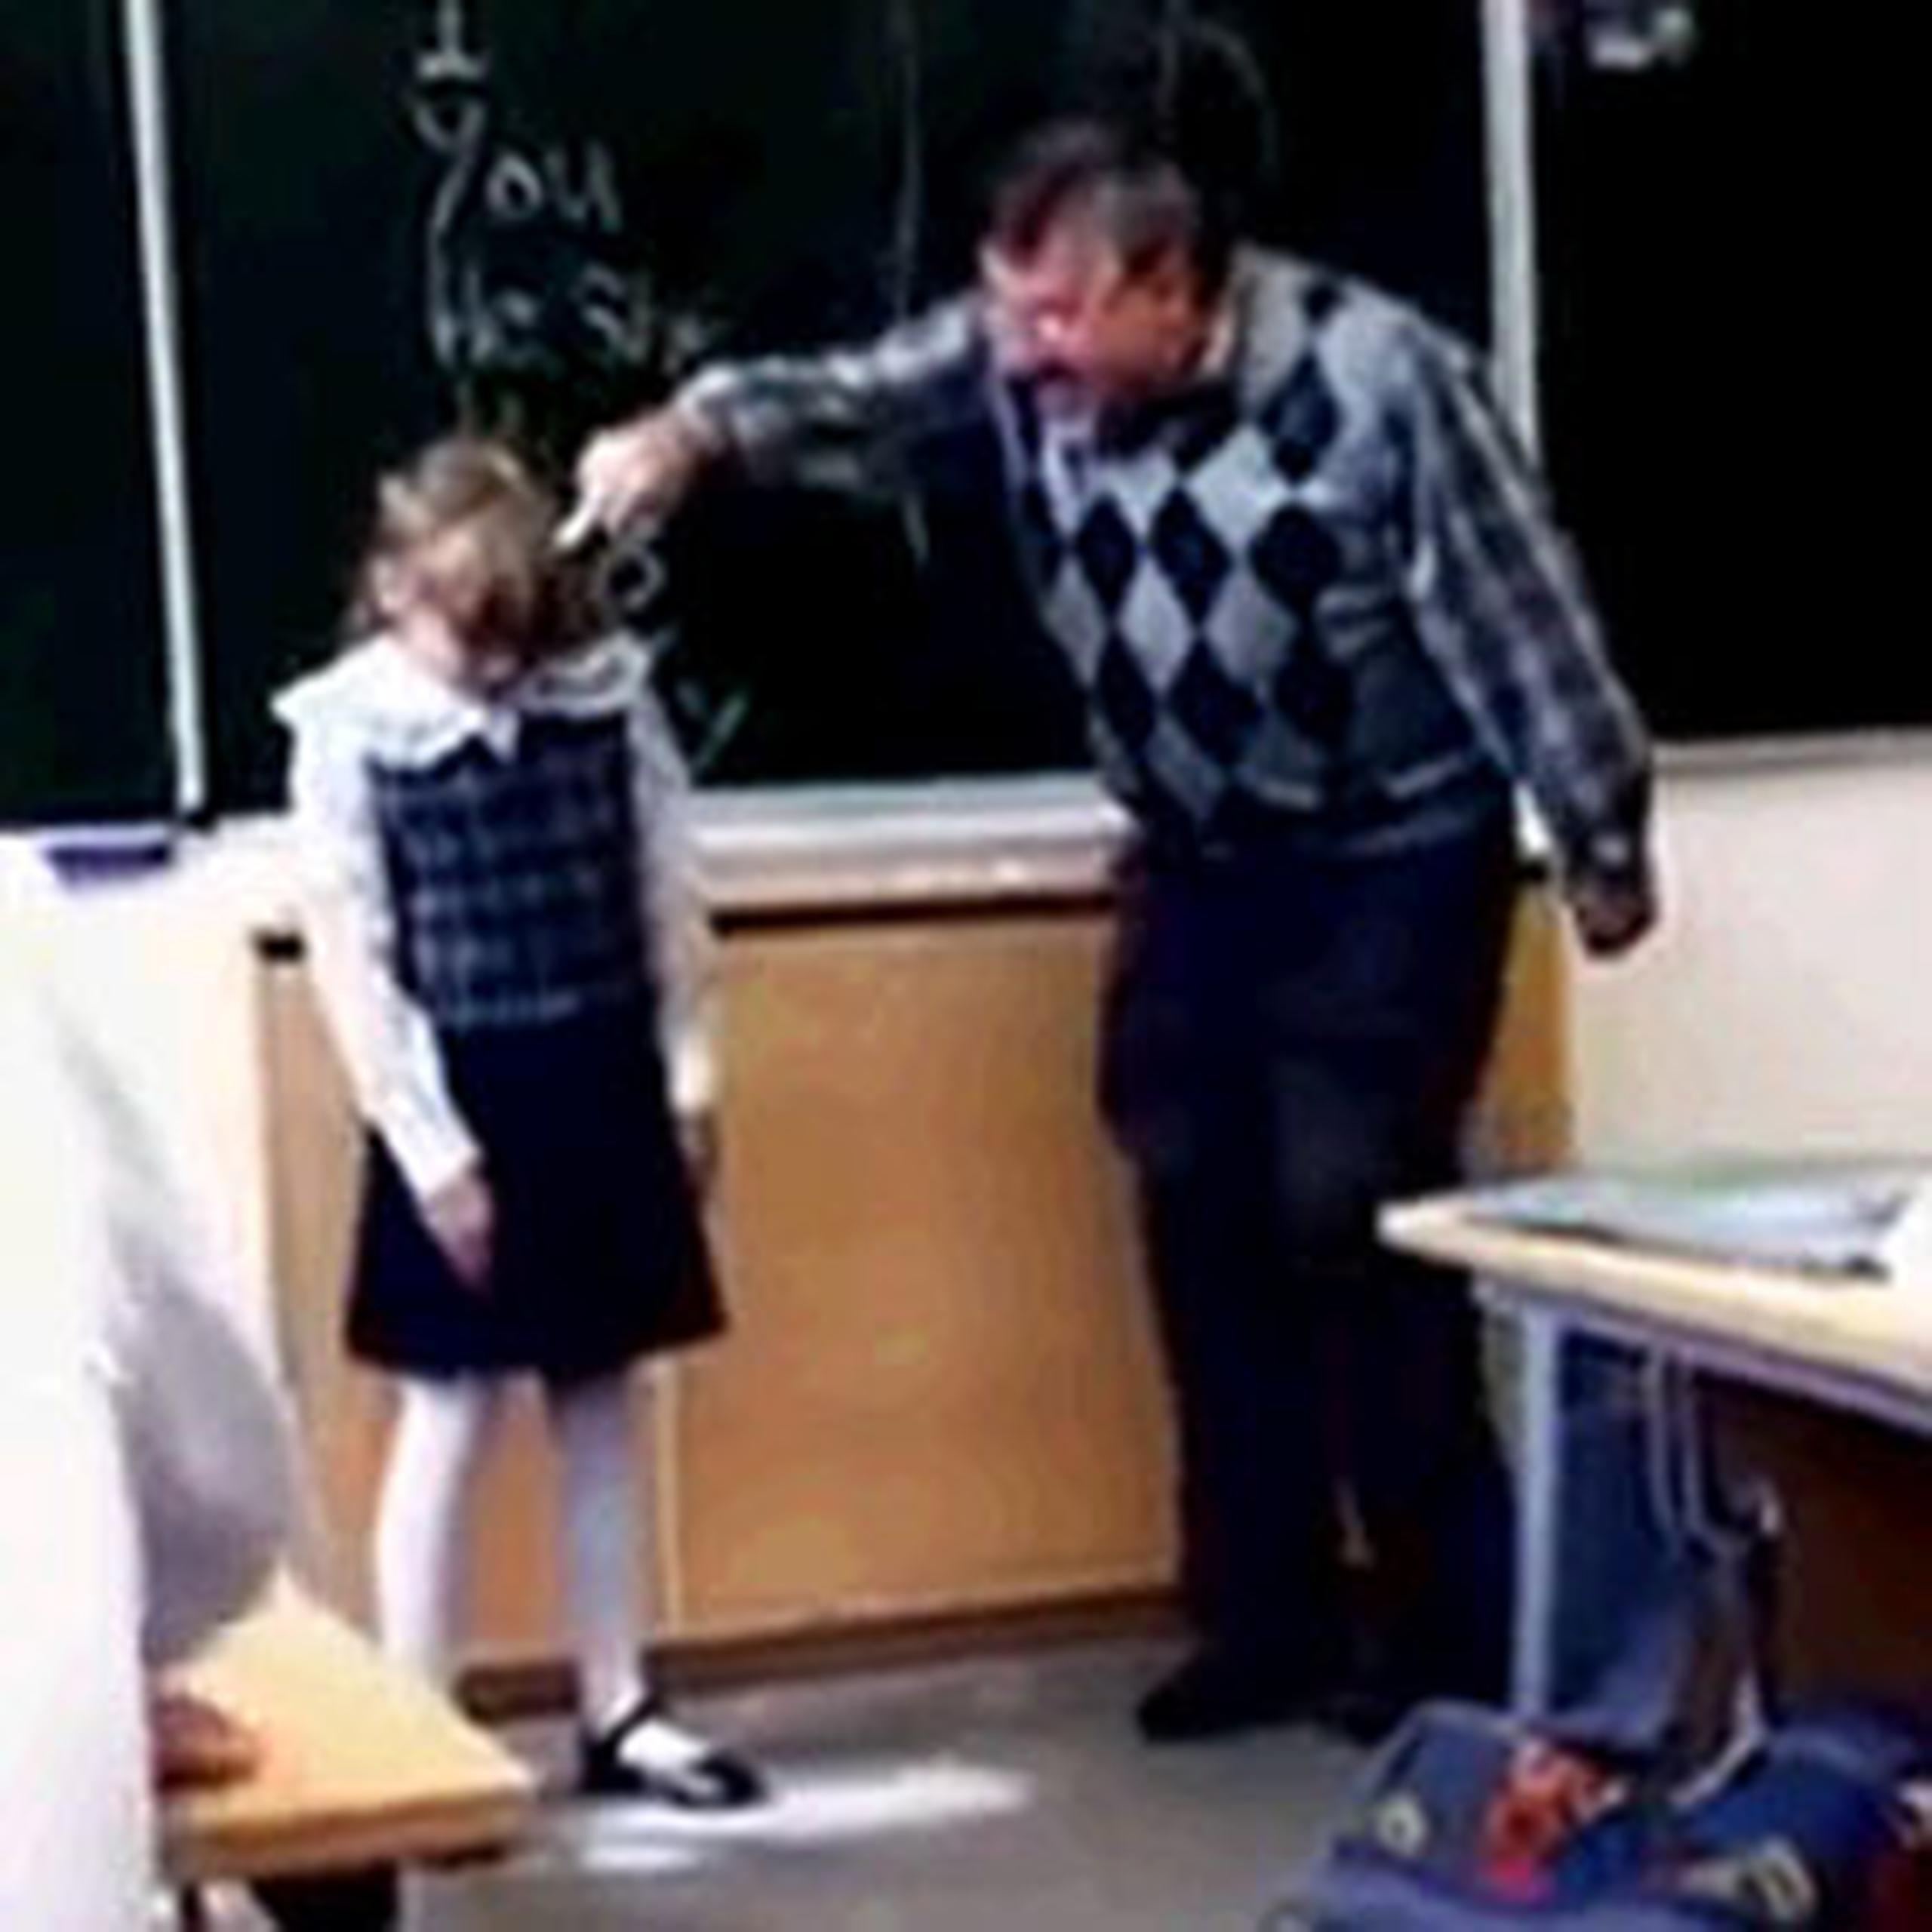 En varias ocasiones el maestro le hace presión fuertemente en la cabeza a la estudiante. (YouTube)